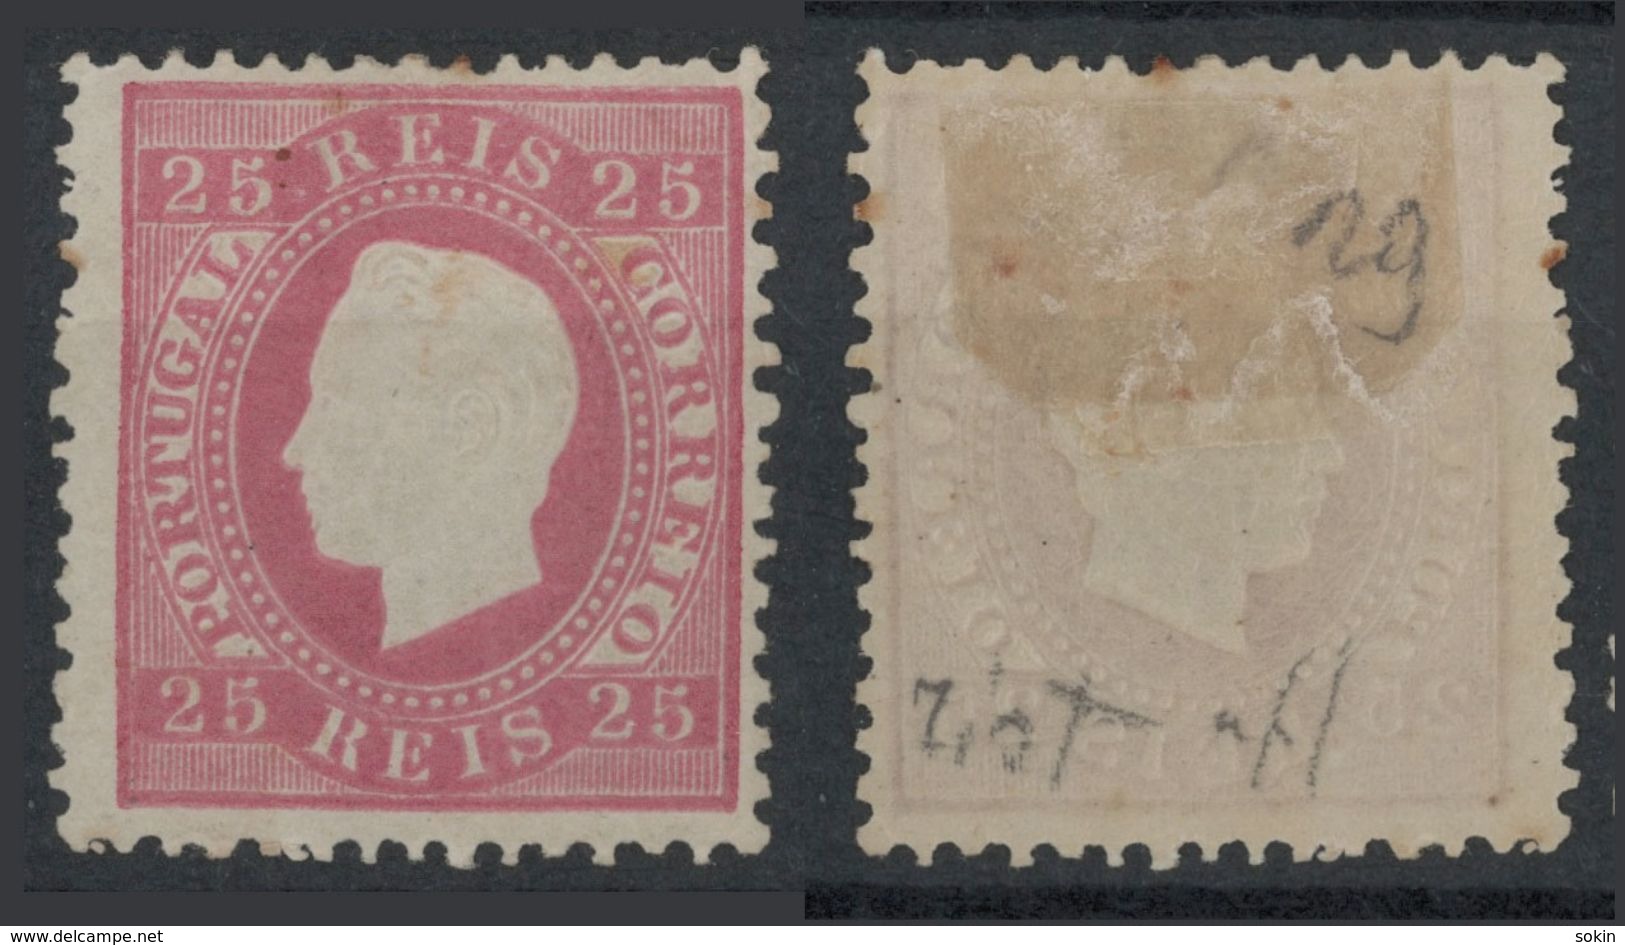 PORTOGALLO  - (Vedere Fotografia) (See Photo) A15 - 25 REIS Rose Perf Nuovo - Unused Stamps